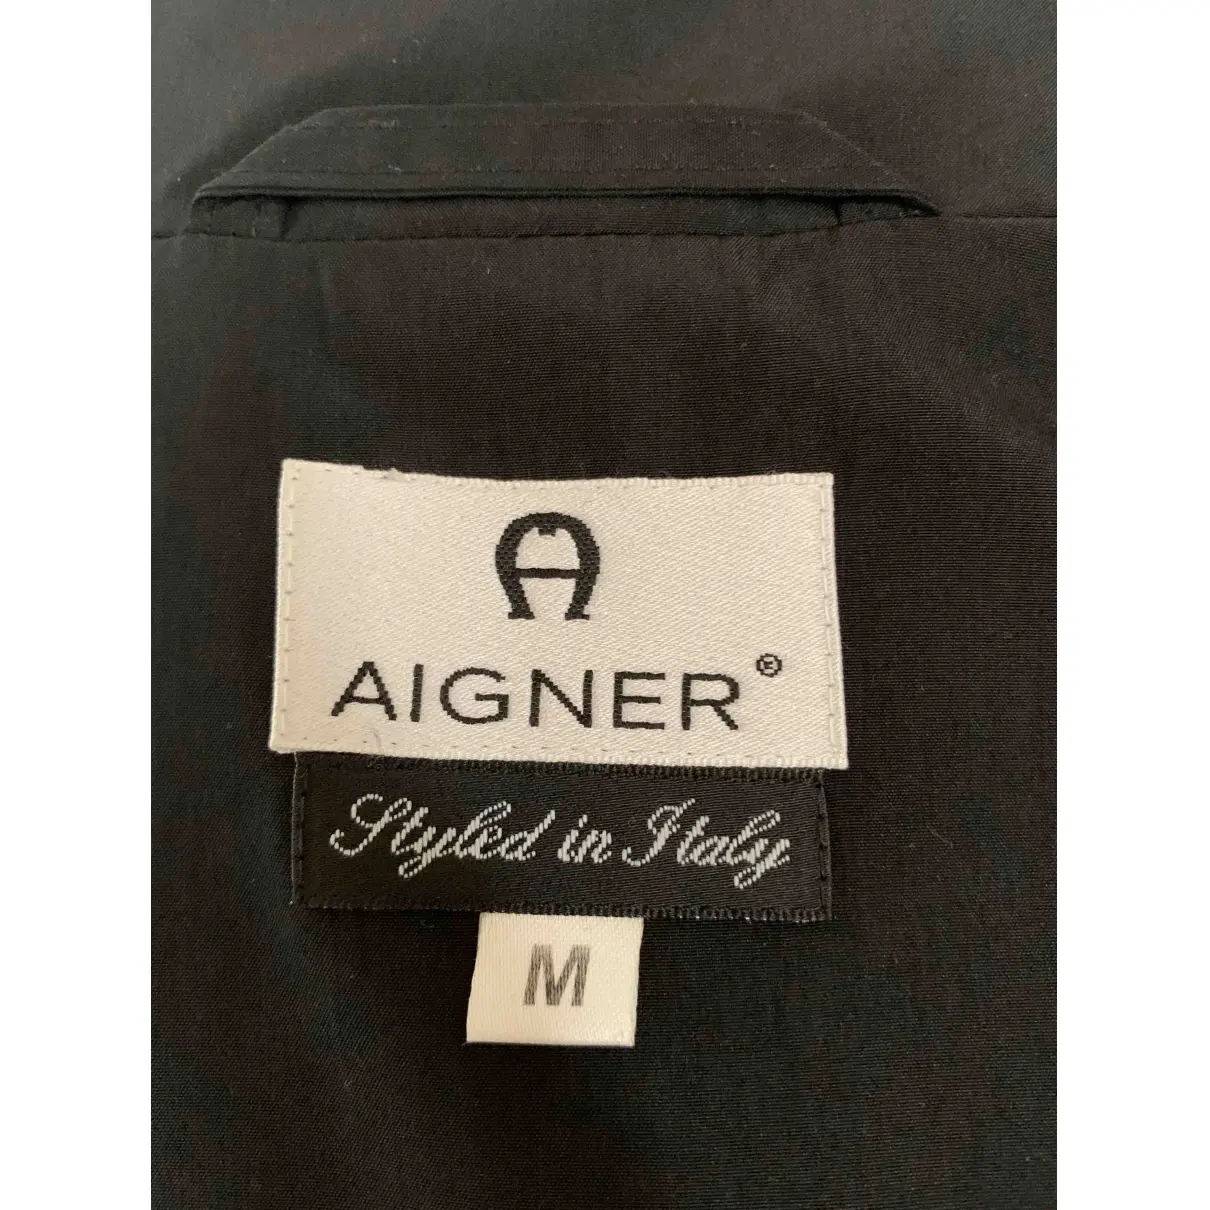 Buy Aigner Black Polyester Coat online - Vintage